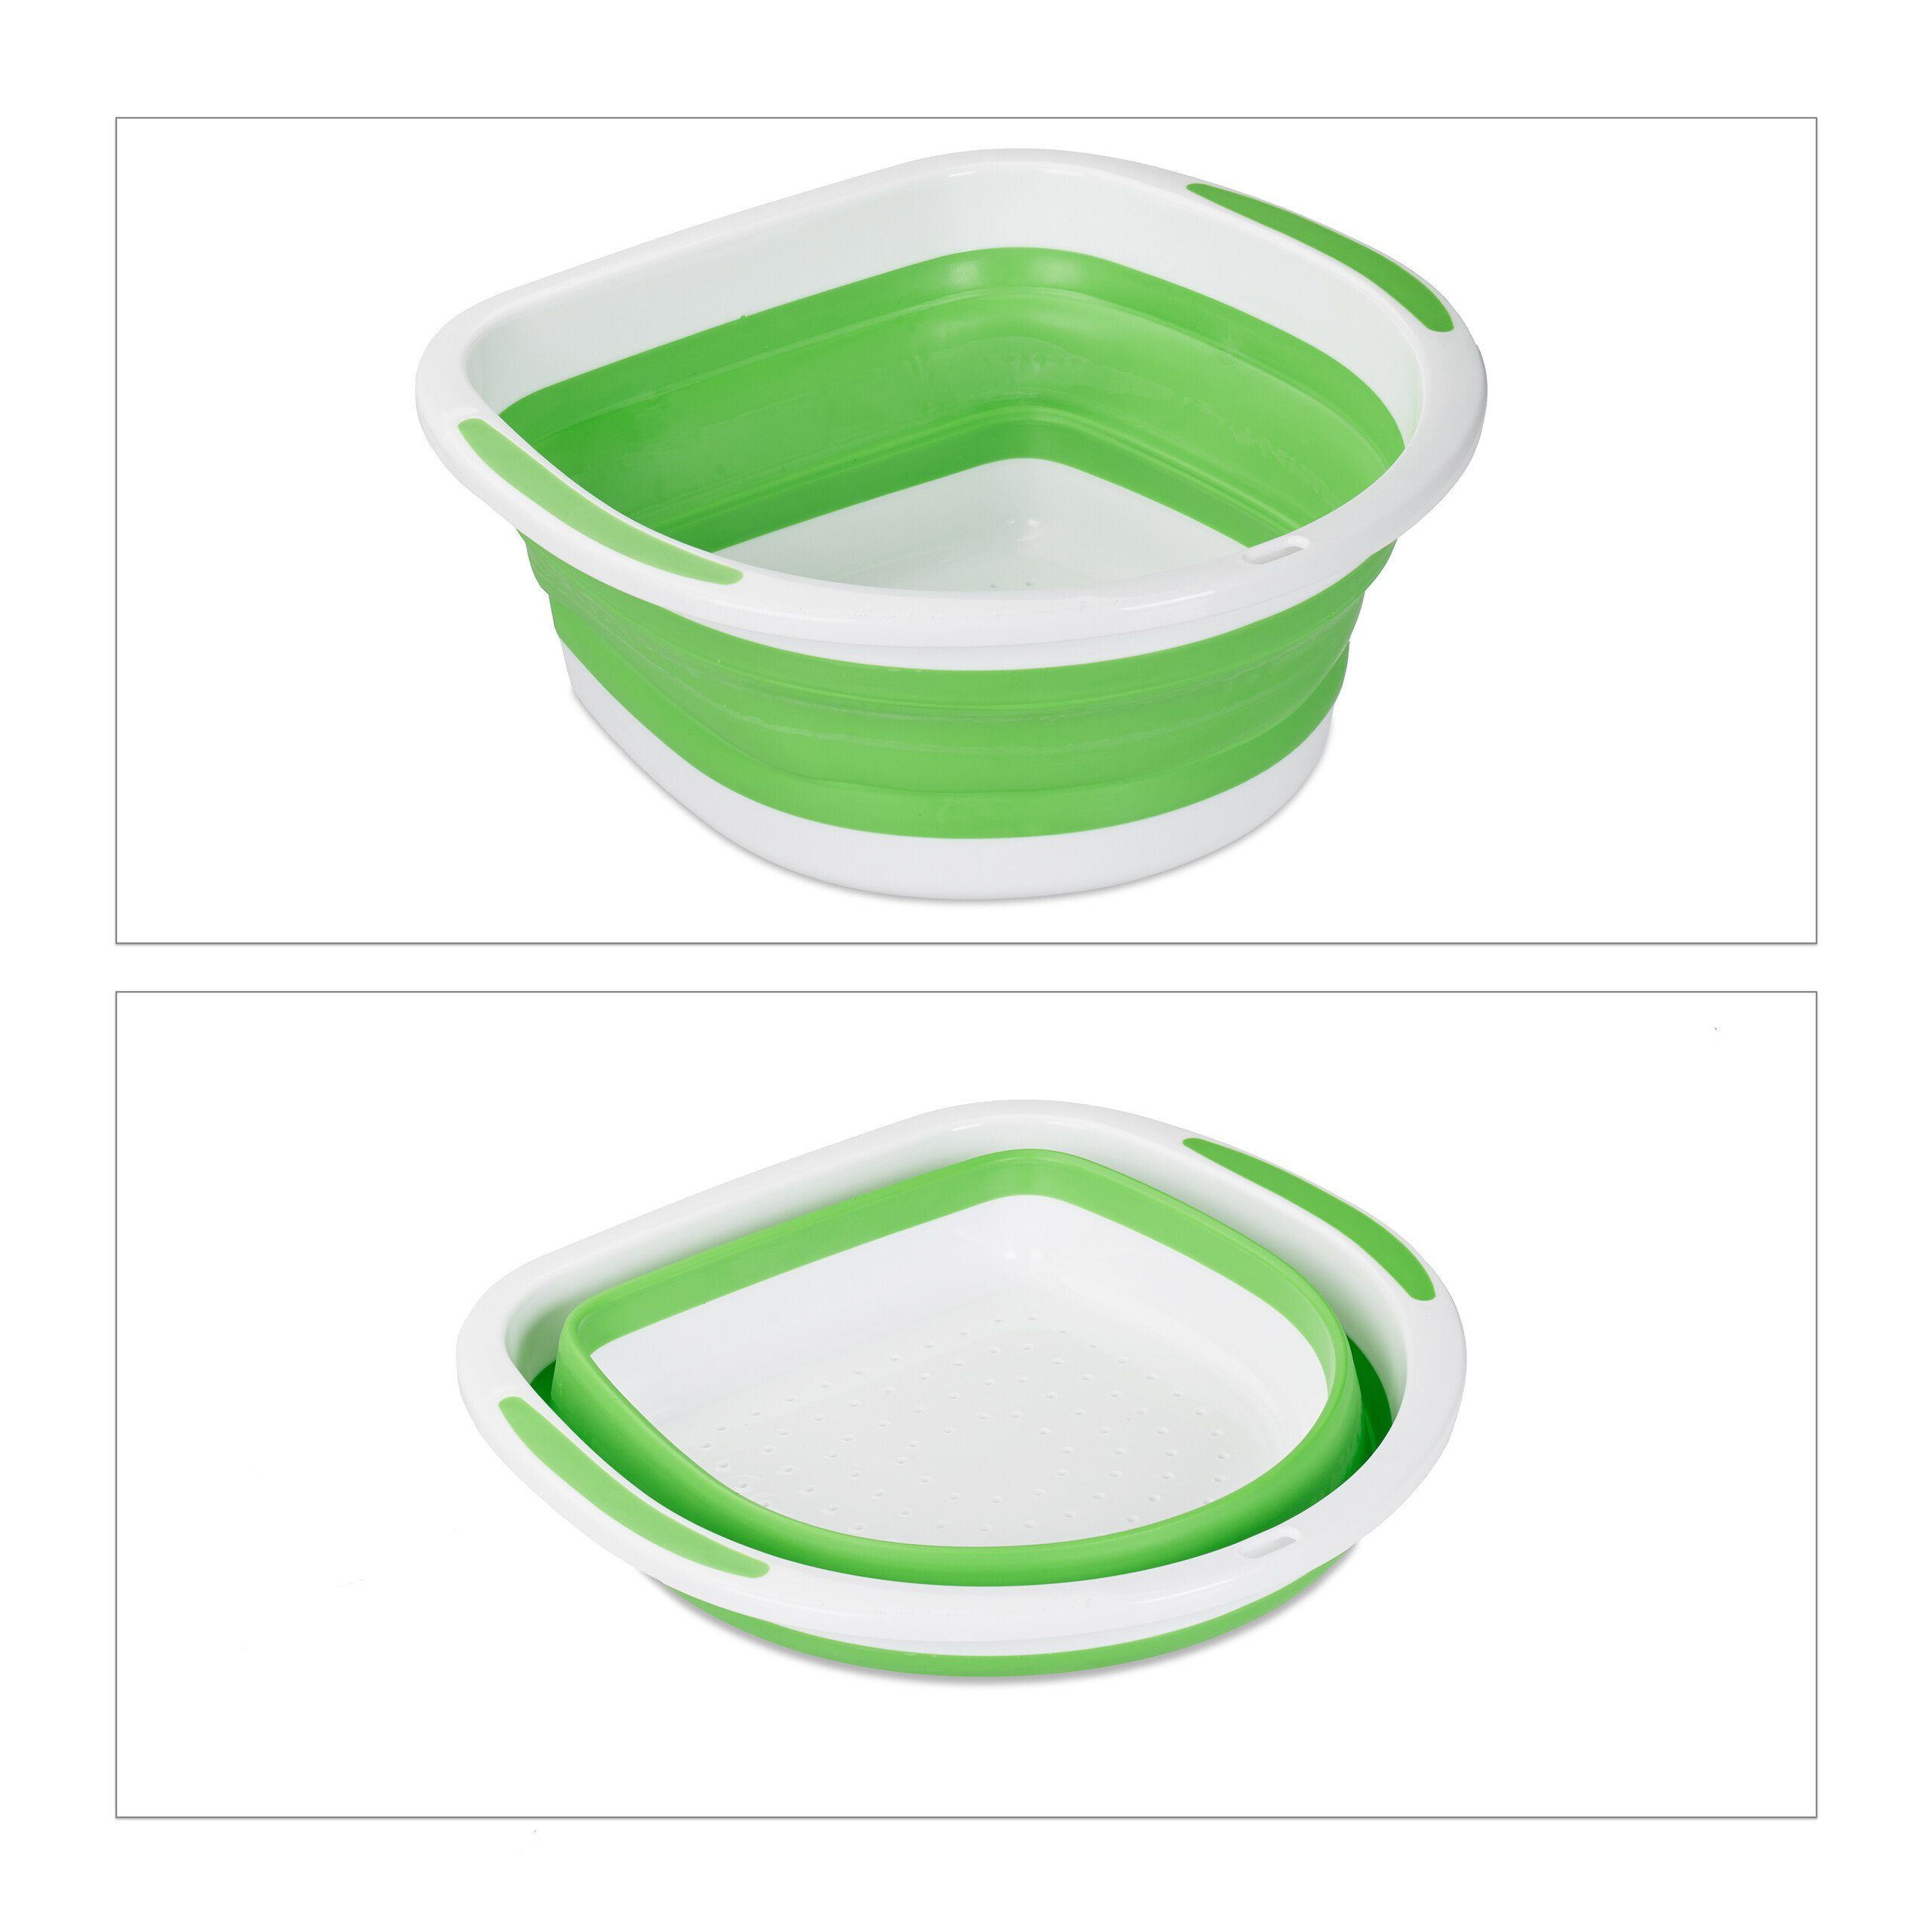 relaxdays Küchensieb Faltbares Grün Kunststoff, Grün Weiß Sieb